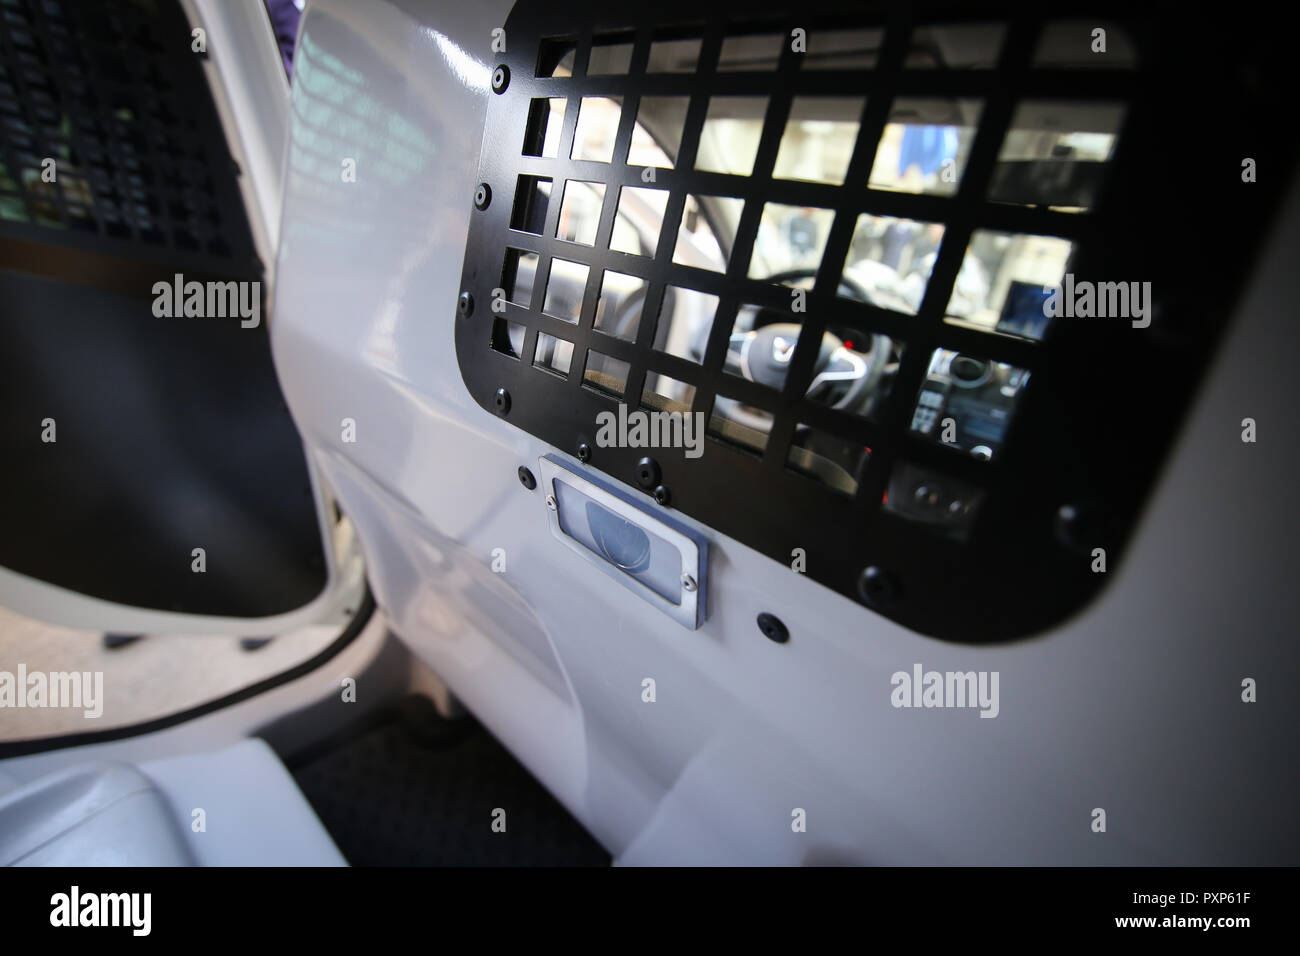 Dettagli dall'interno di un rumeno veicolo polizia, con barre su windows e un sistema di monitoraggio video camera sul retro Foto Stock